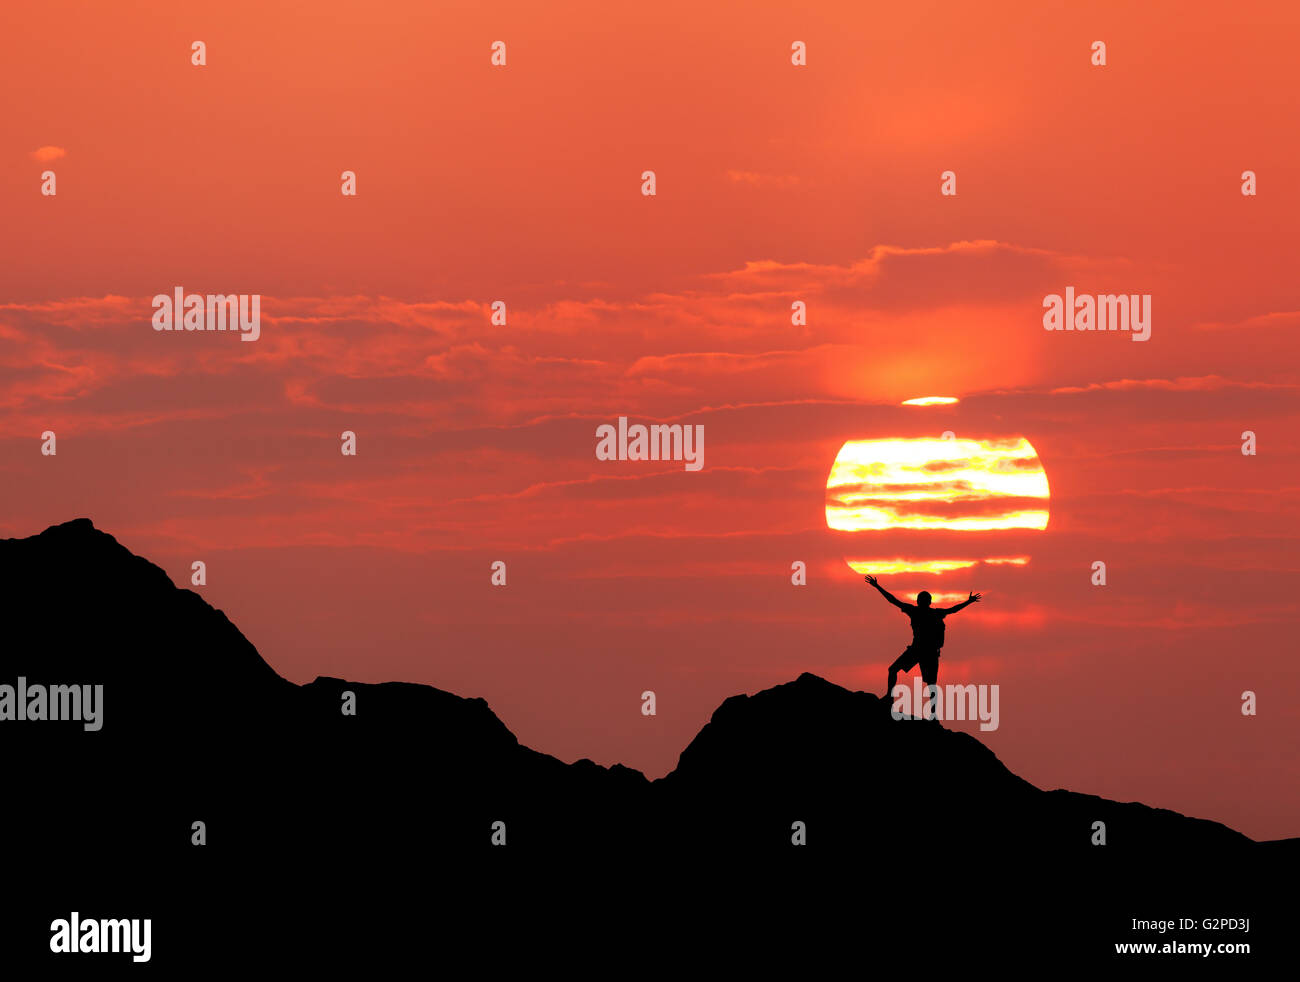 Sonnenuntergang Landschaft mit Silhouette stehen glücklich mit Rucksack und wuchs bis Armen auf dem Hintergrund der Sonnenscheibe und re Stockfoto